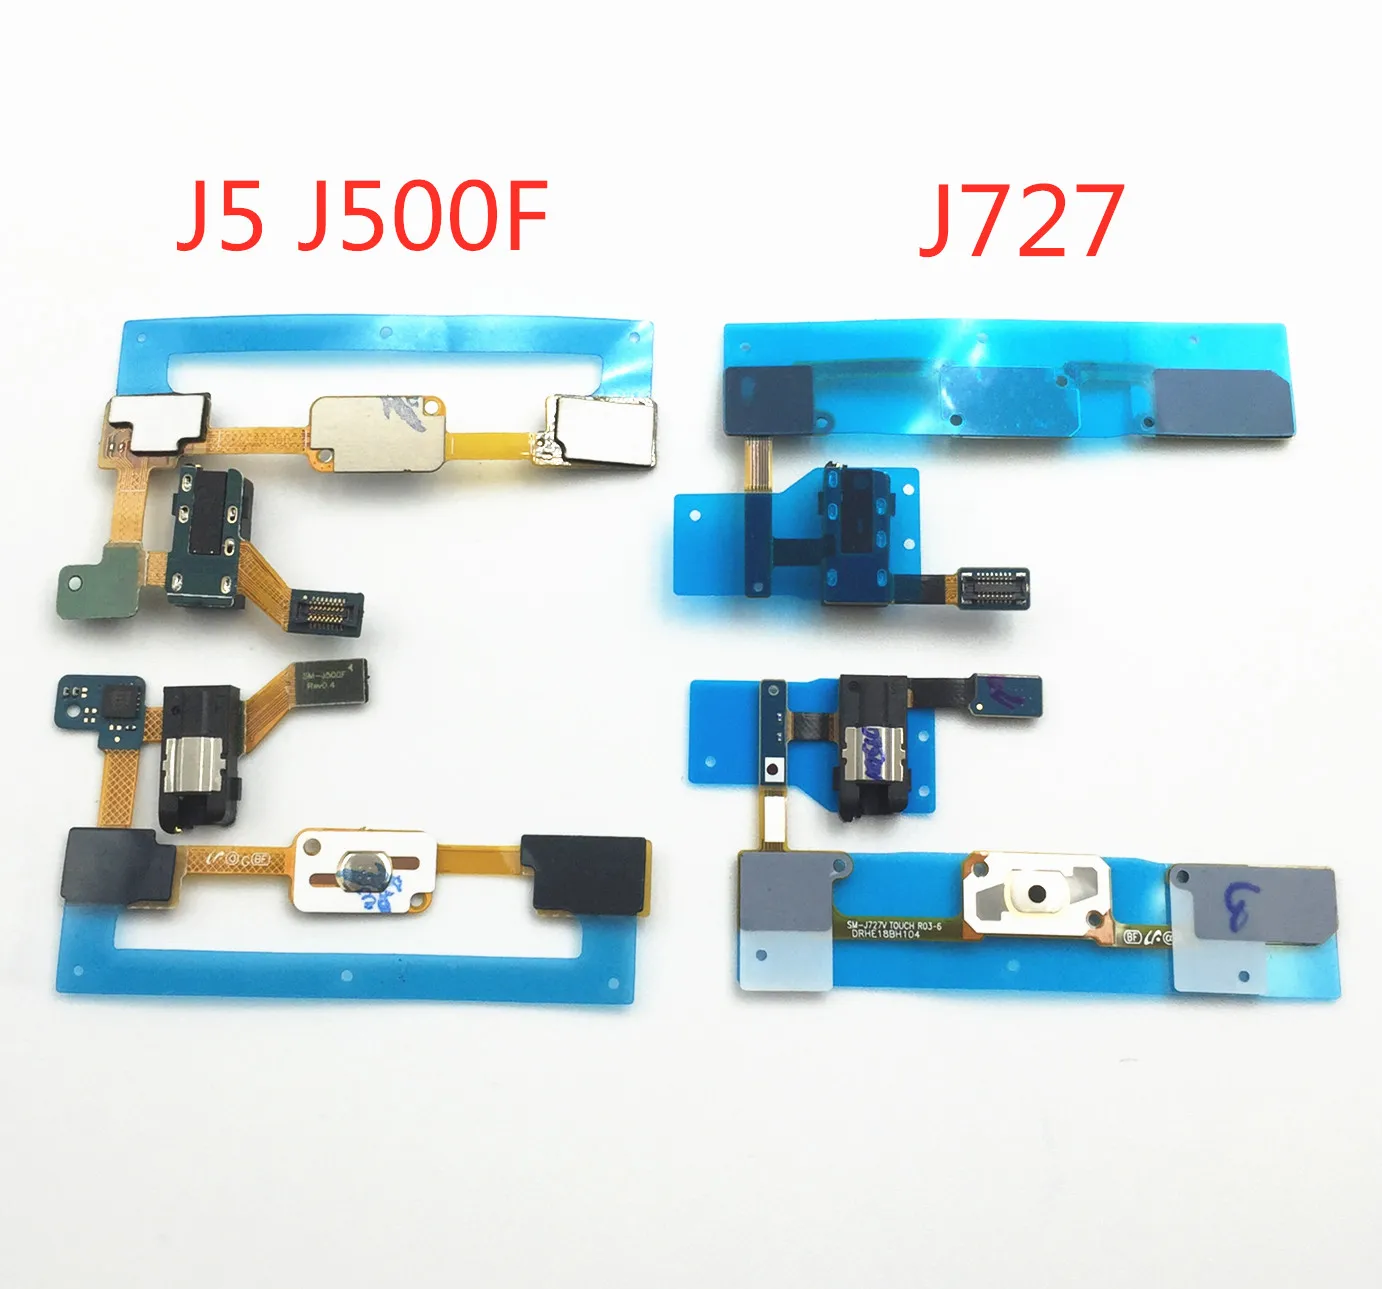 1 шт. новая кнопка возврат в меню ключ сенсор гибкий кабель с аудио разъем для наушников для samsung Galaxy J5 J500F J727 запасные части